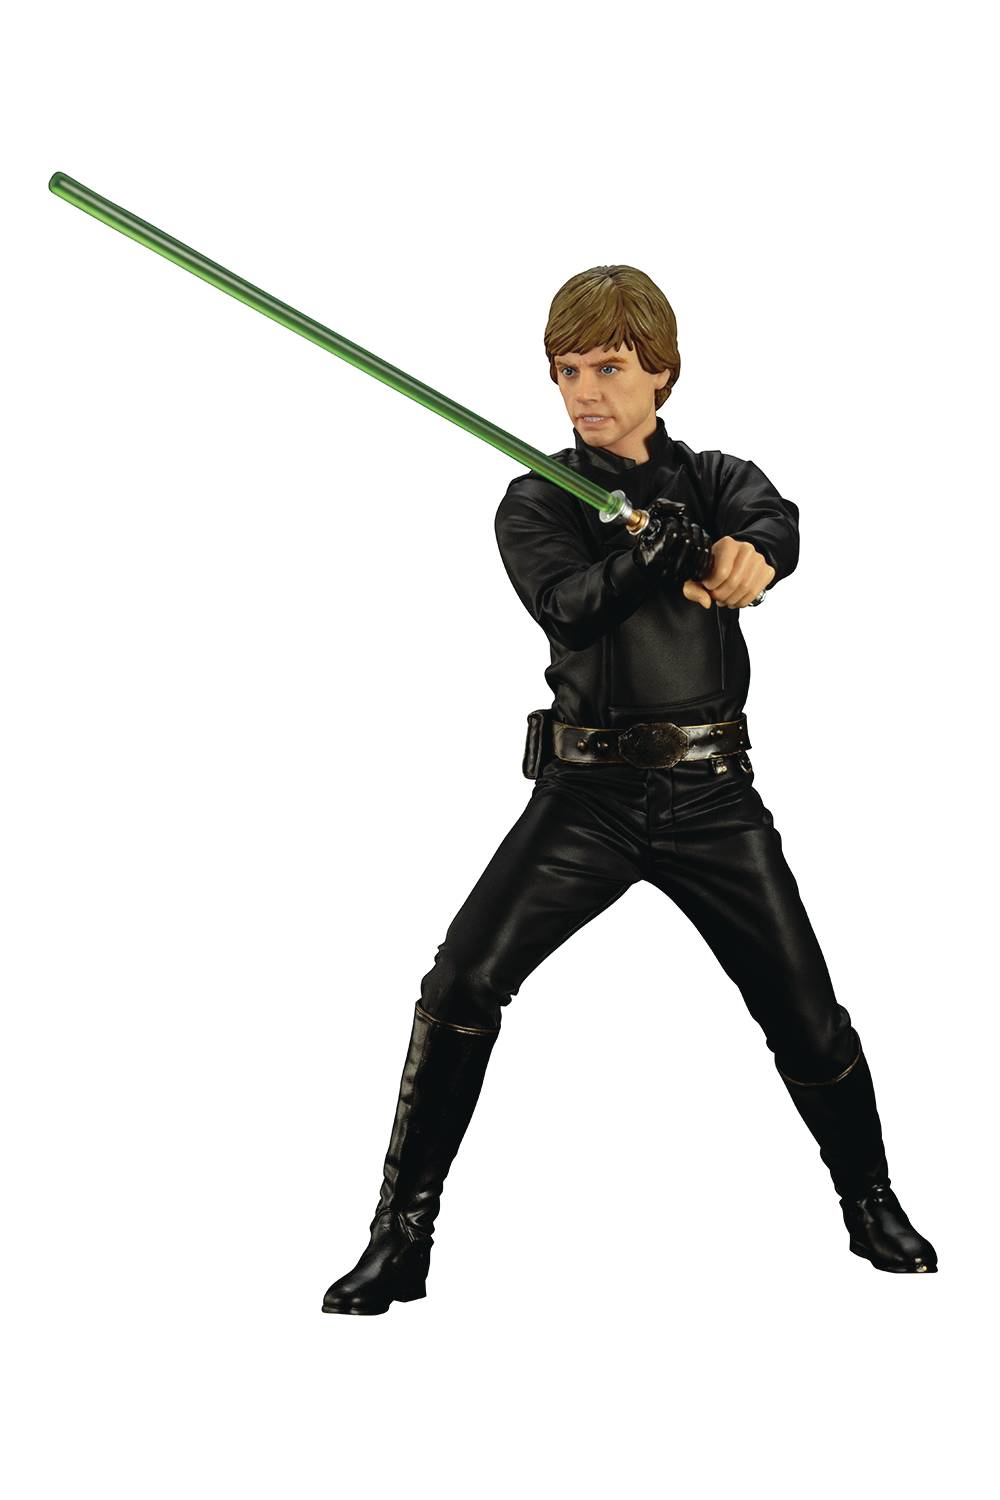 Star Wars Return Of The Jedi 7 Inch Statue Figure ArtfFX+ - Luke Skywalker